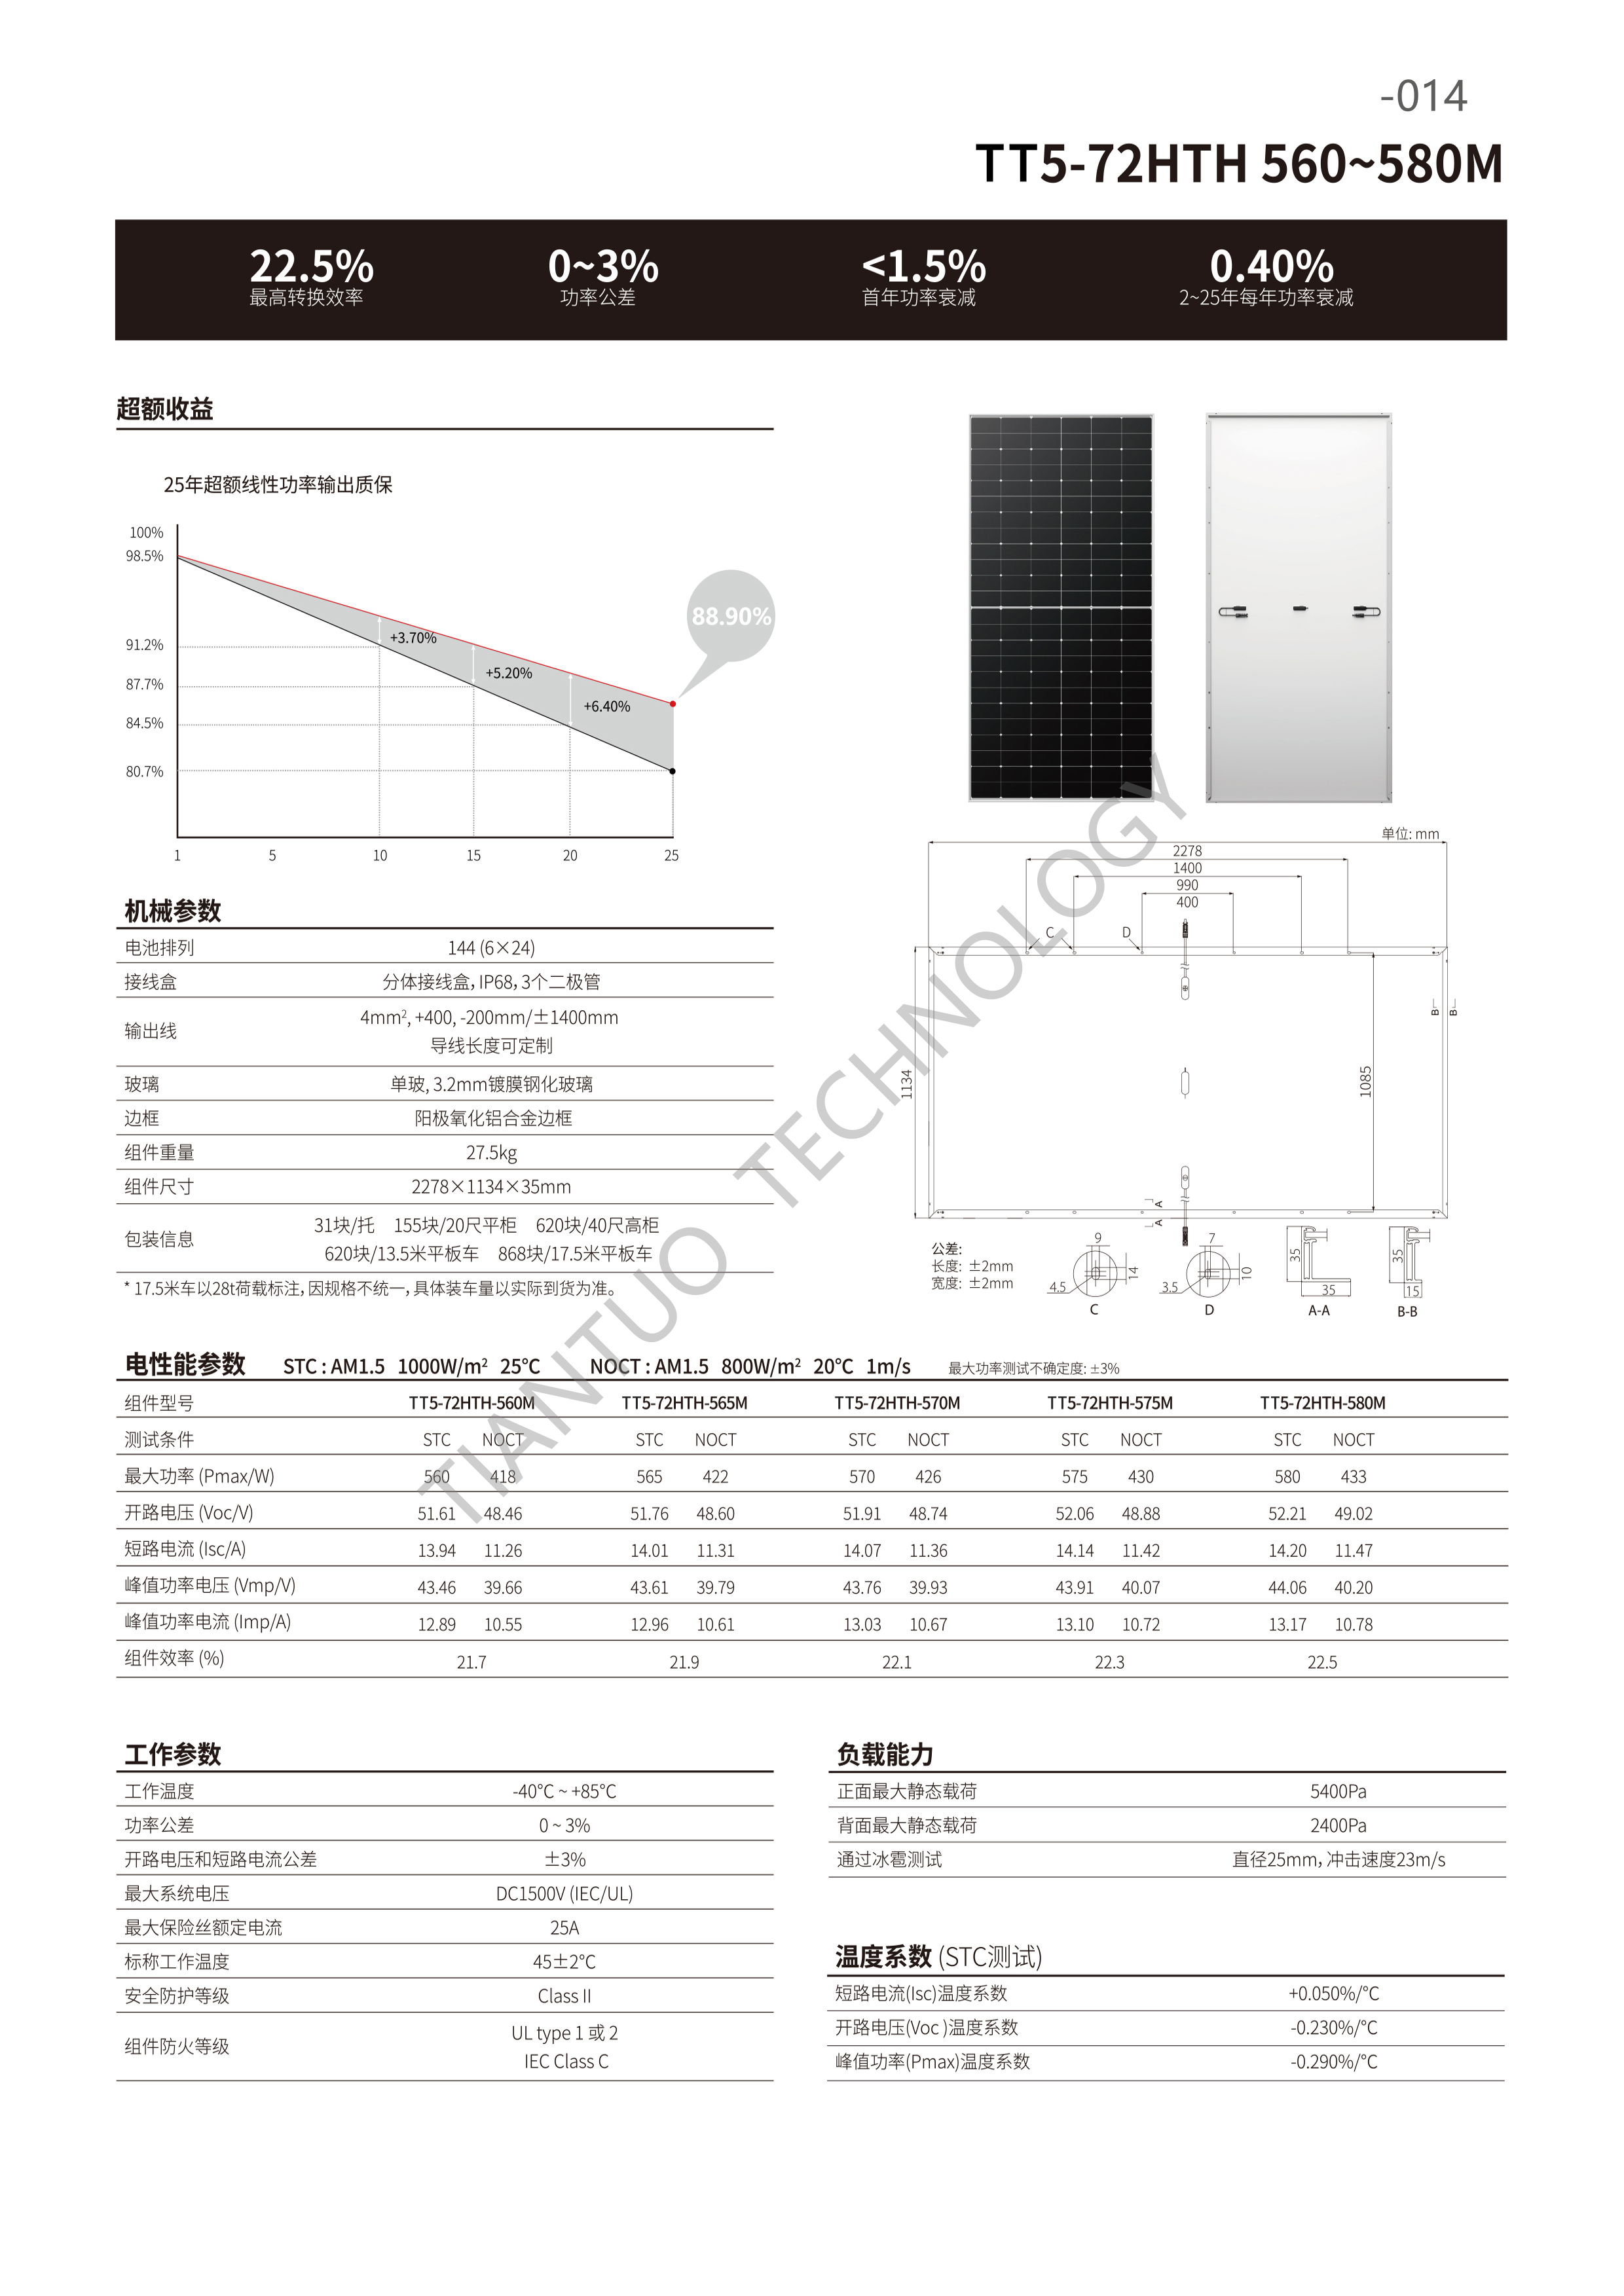 天托科技_BIPV分布式光伏发电技术手册5.0(水印版)_17.png